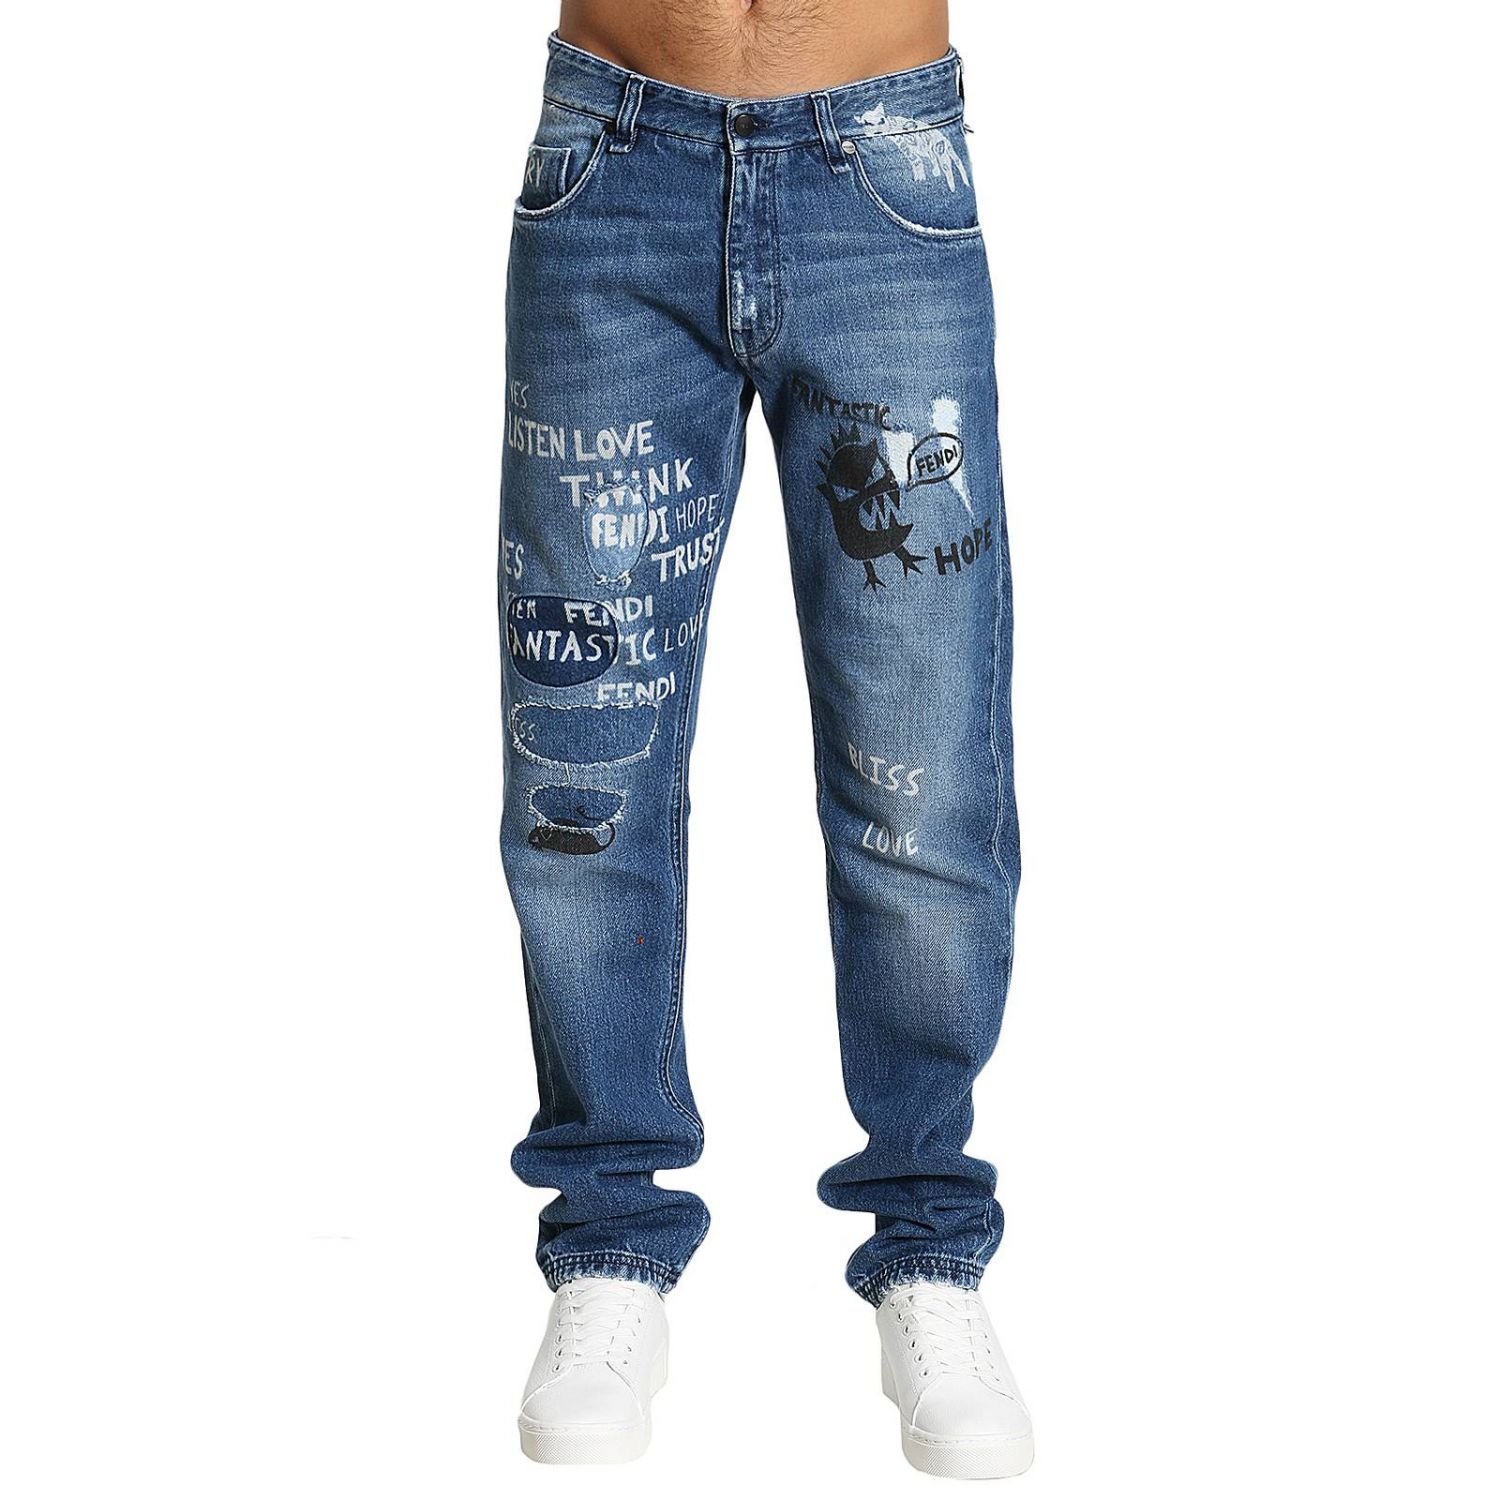 Fendi Outlet: Jeans | Jeans Fendi Men Washed | Jeans Fendi A07D